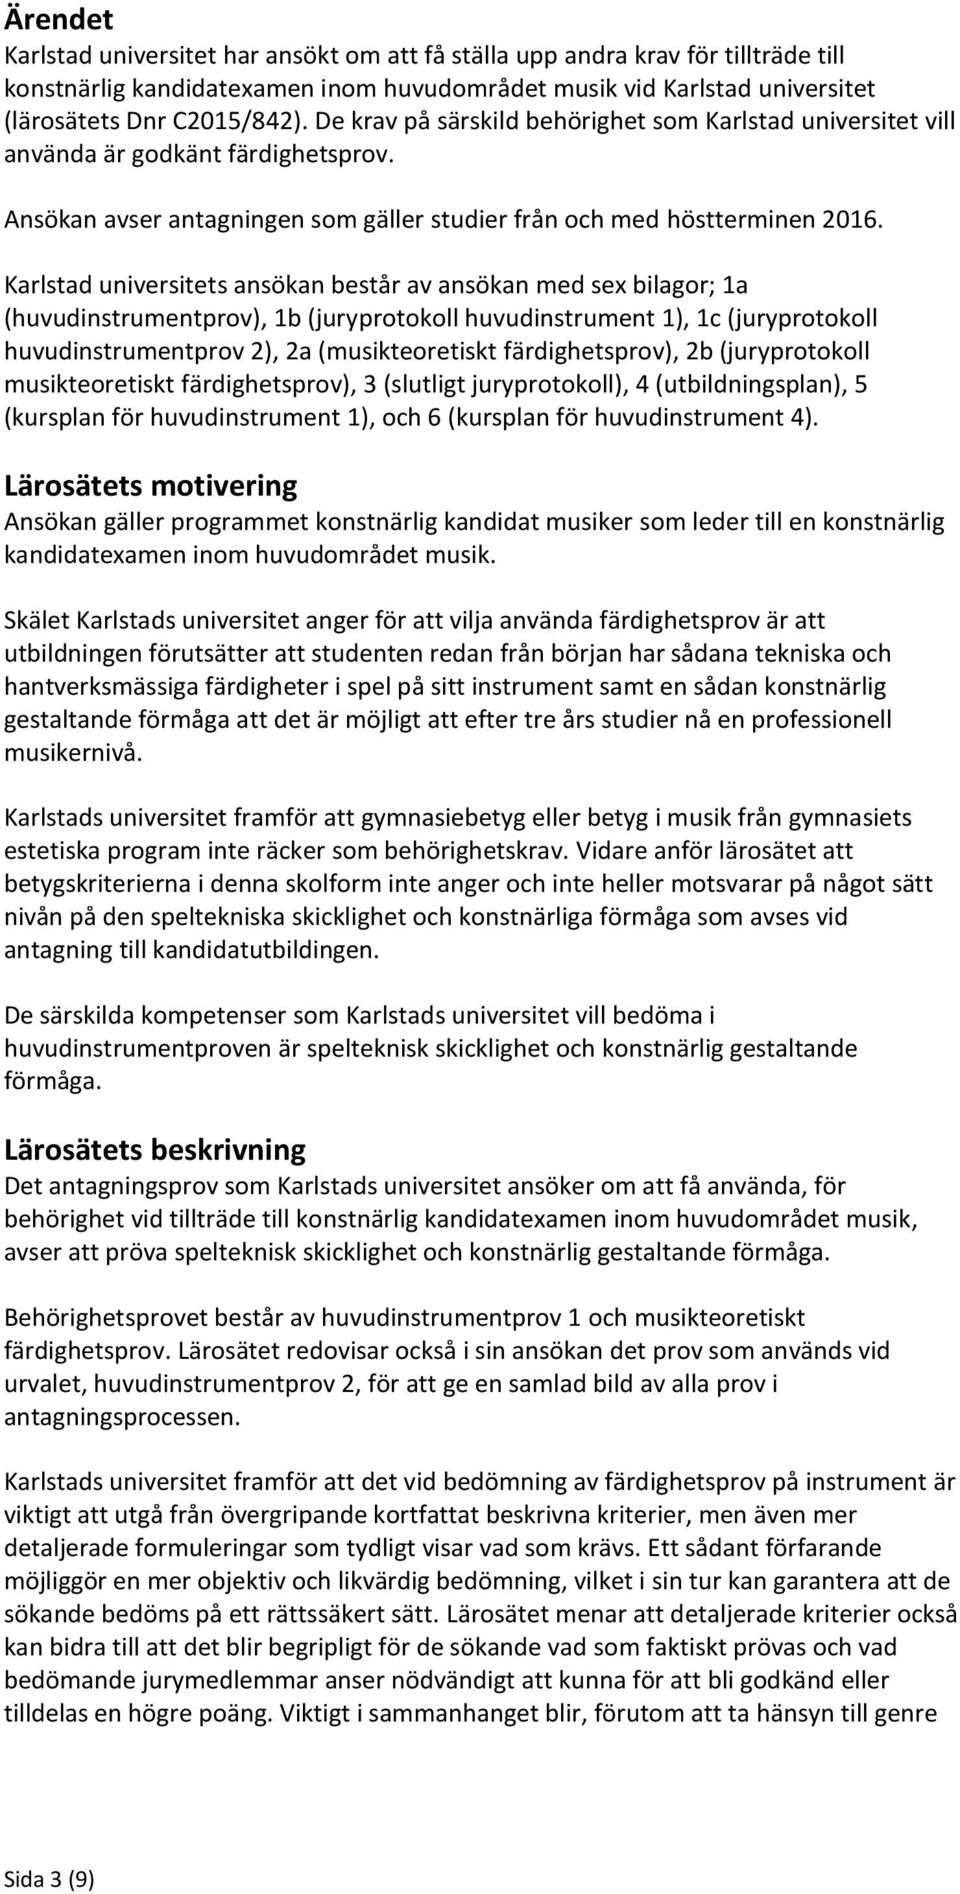 Karlstad universitets ansökan består av ansökan med sex bilagor; 1a (huvudinstrumentprov), 1b (juryprotokoll huvudinstrument 1), 1c (juryprotokoll huvudinstrumentprov 2), 2a (musikteoretiskt